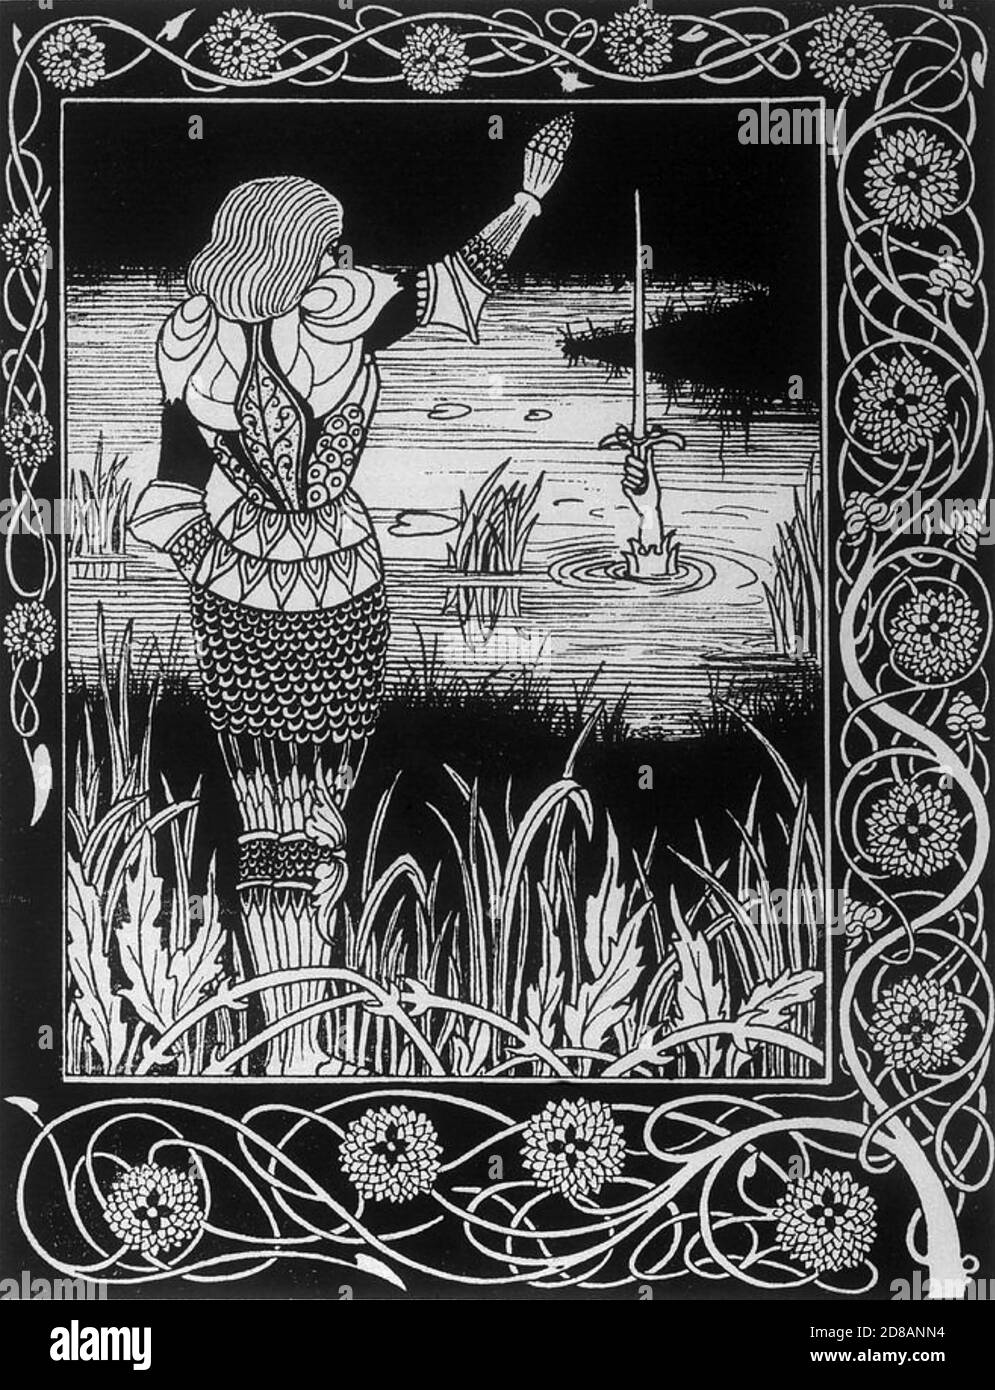 SIR BEDIVERE wirft das Schwert Excalibur in den See hinein Die Legende von König Arthur Stockfoto